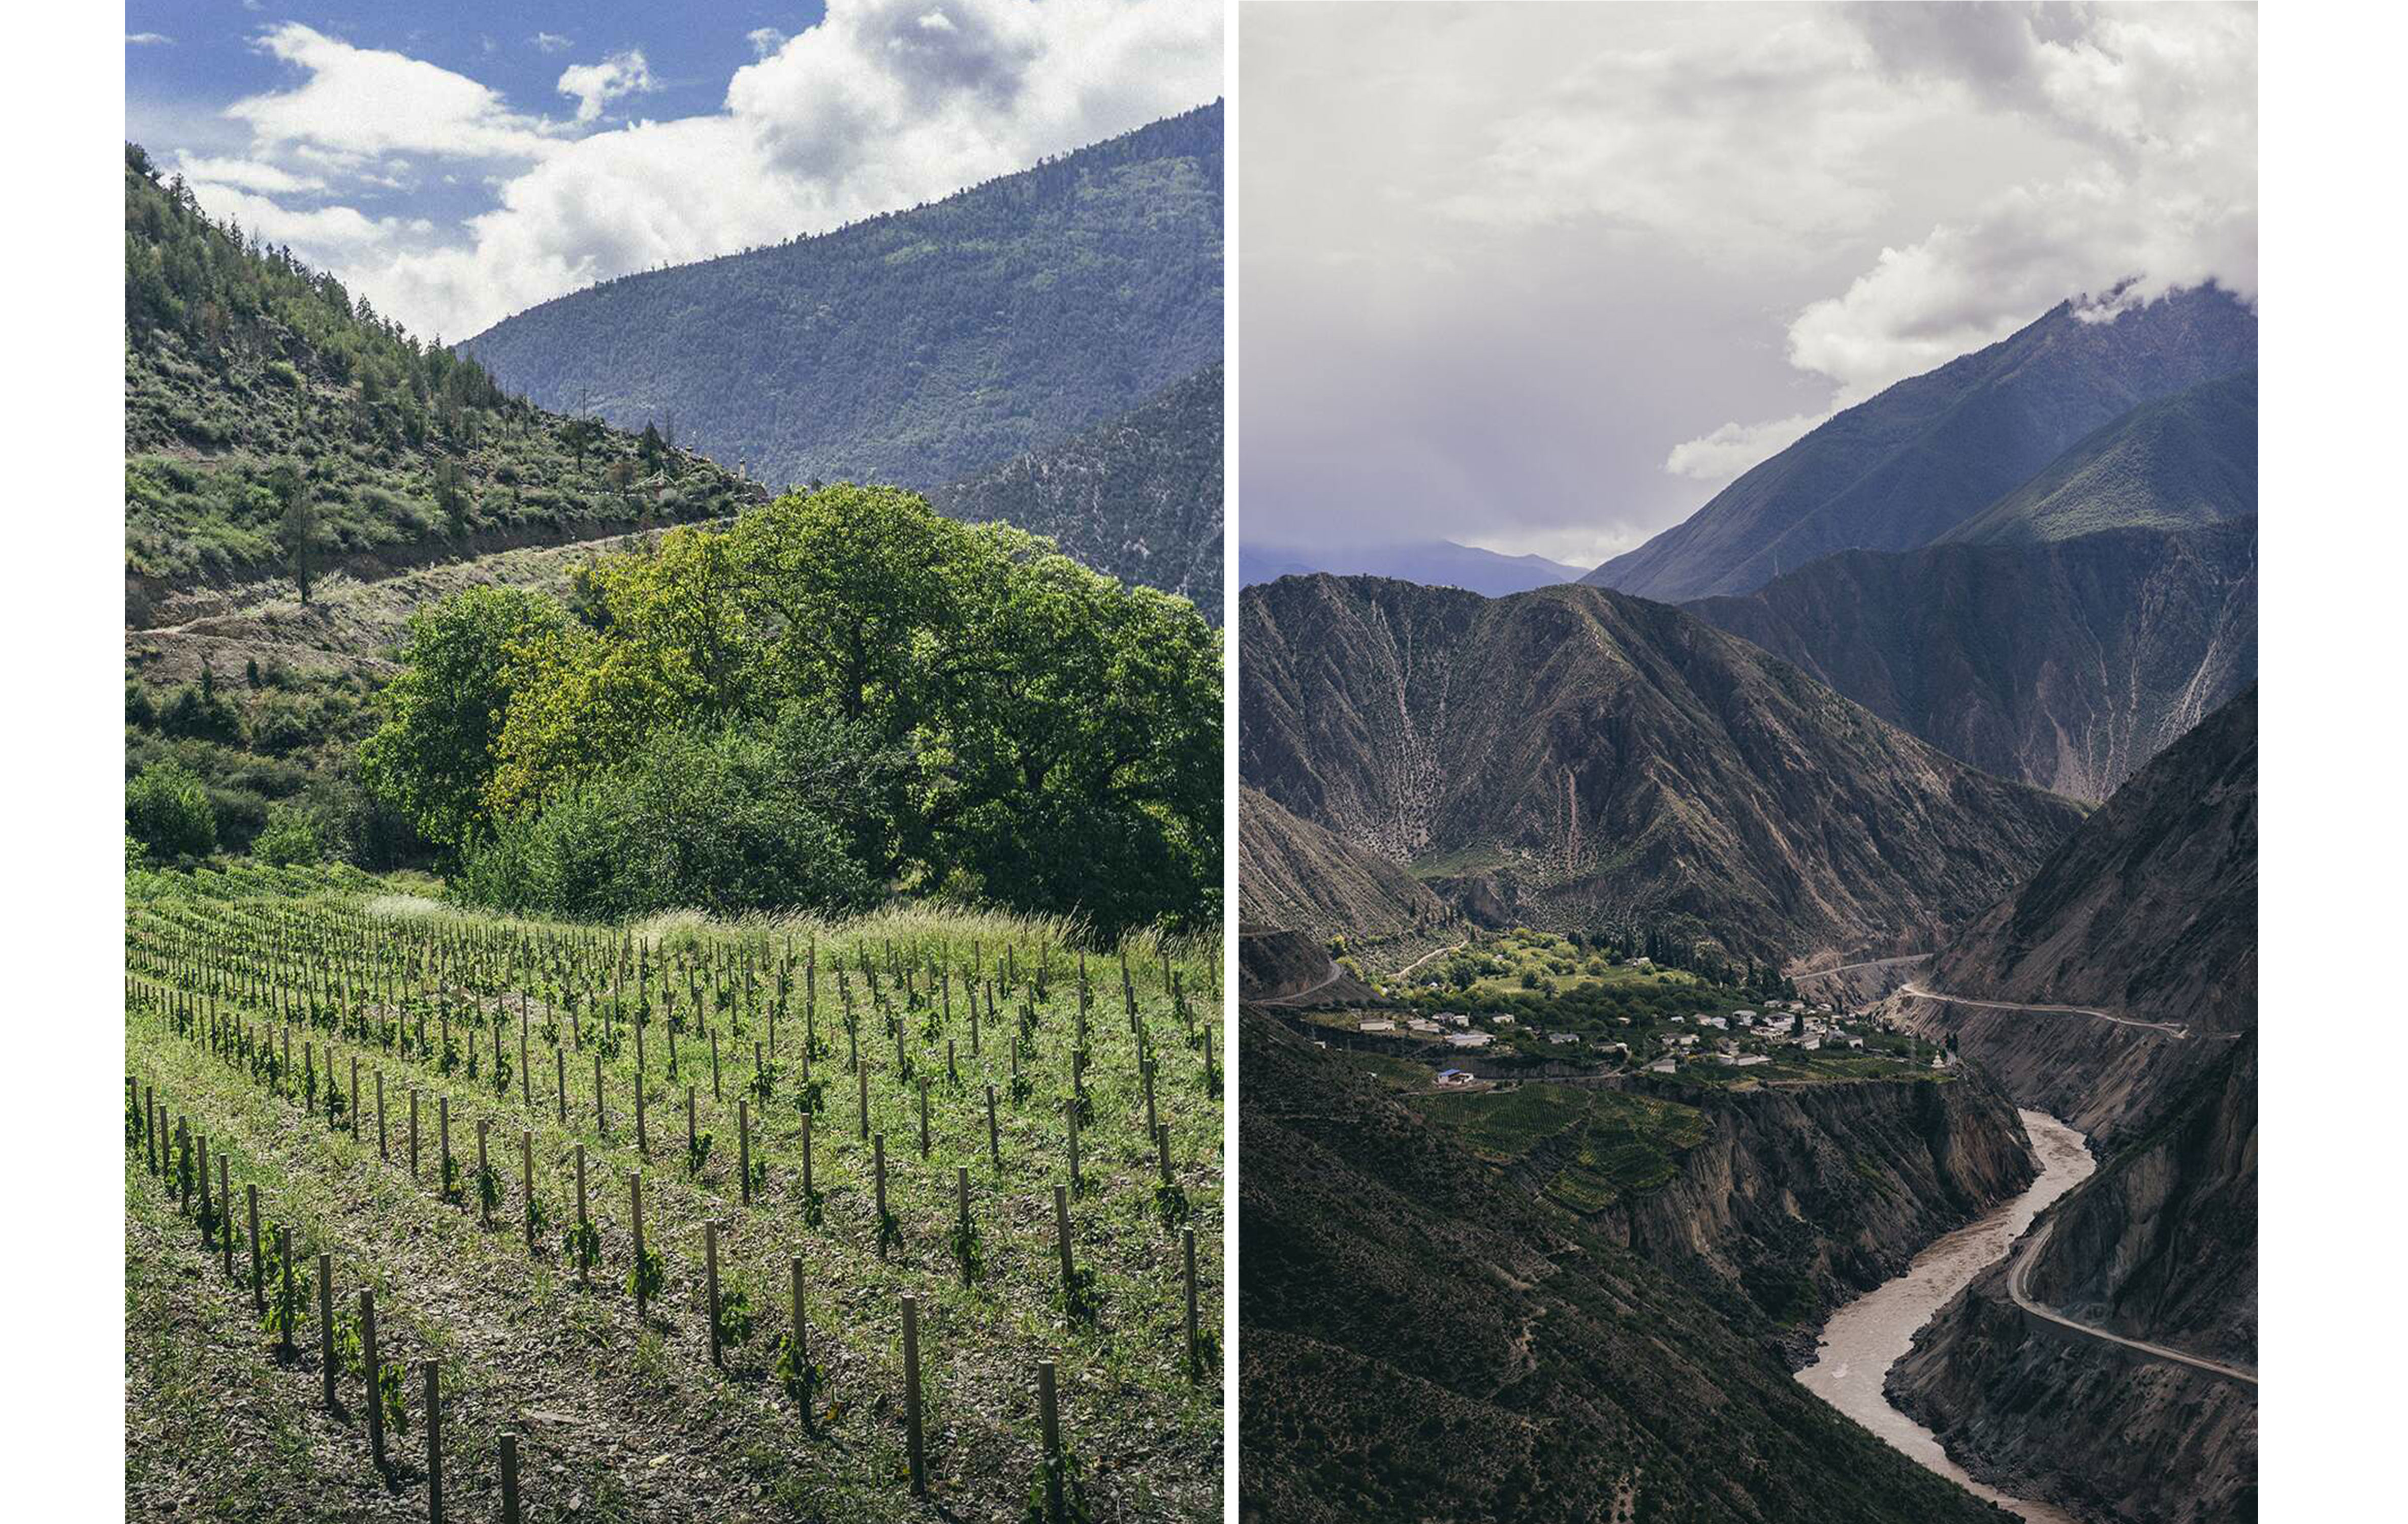 A gauche : Villages et plateaux en Himalaya | A droite : Adong, le plus haut vignoble d’Ao Yun situé à 2600 mètres d’altitude - Crédit photos : LVMH / J.Penninck